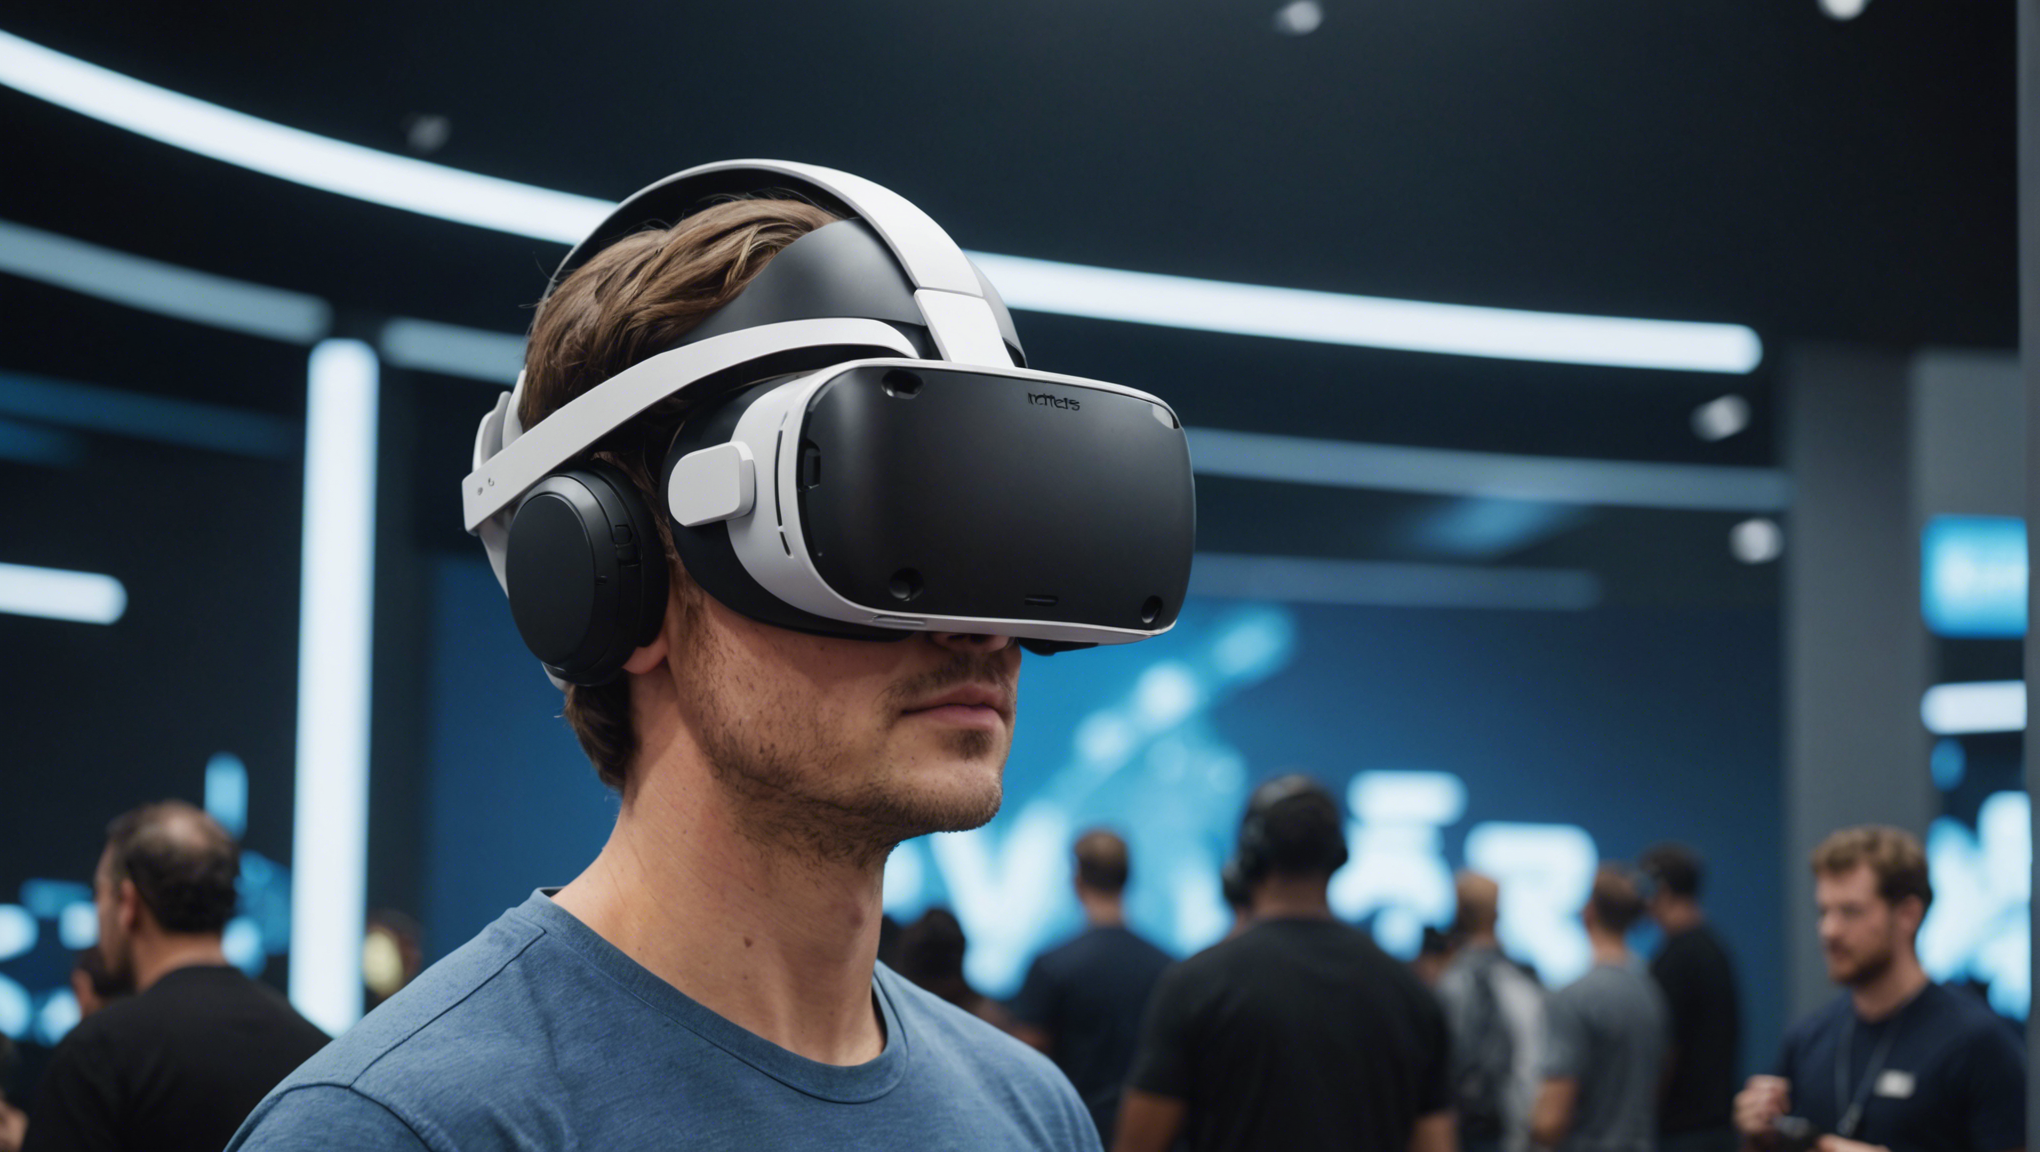 découvrez le casque vr meta quest 2, la révolution de la réalité virtuelle qui redéfinit l'expérience de jeu et de divertissement. plongez dans un monde immersif grâce à la technologie de pointe de meta quest 2.